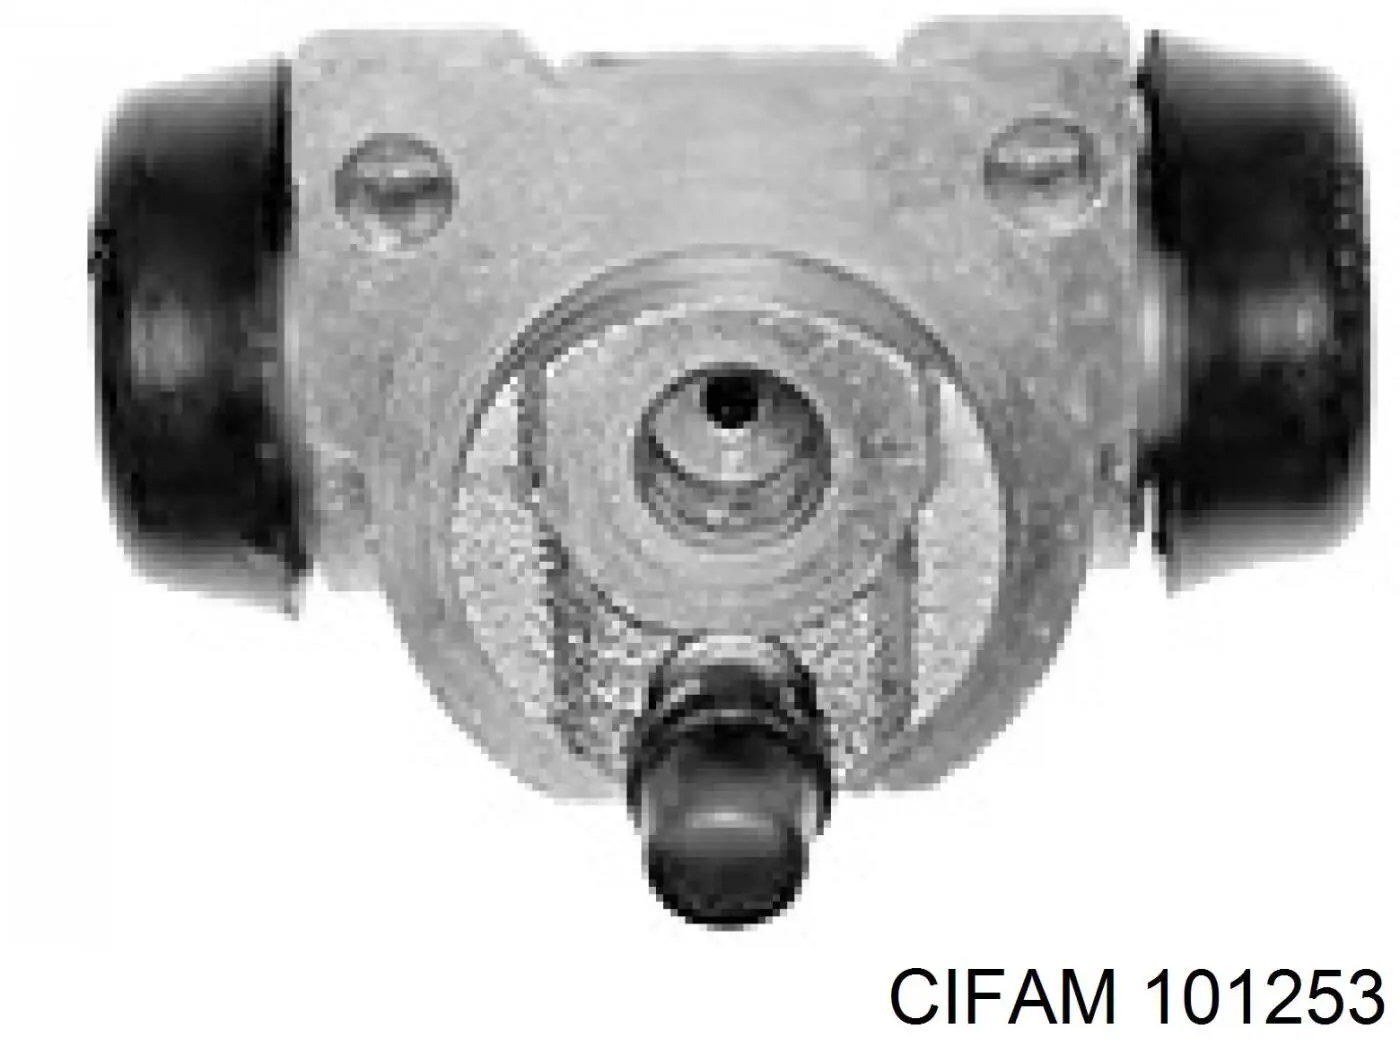 101253 Cifam cilindro de freno de rueda trasero